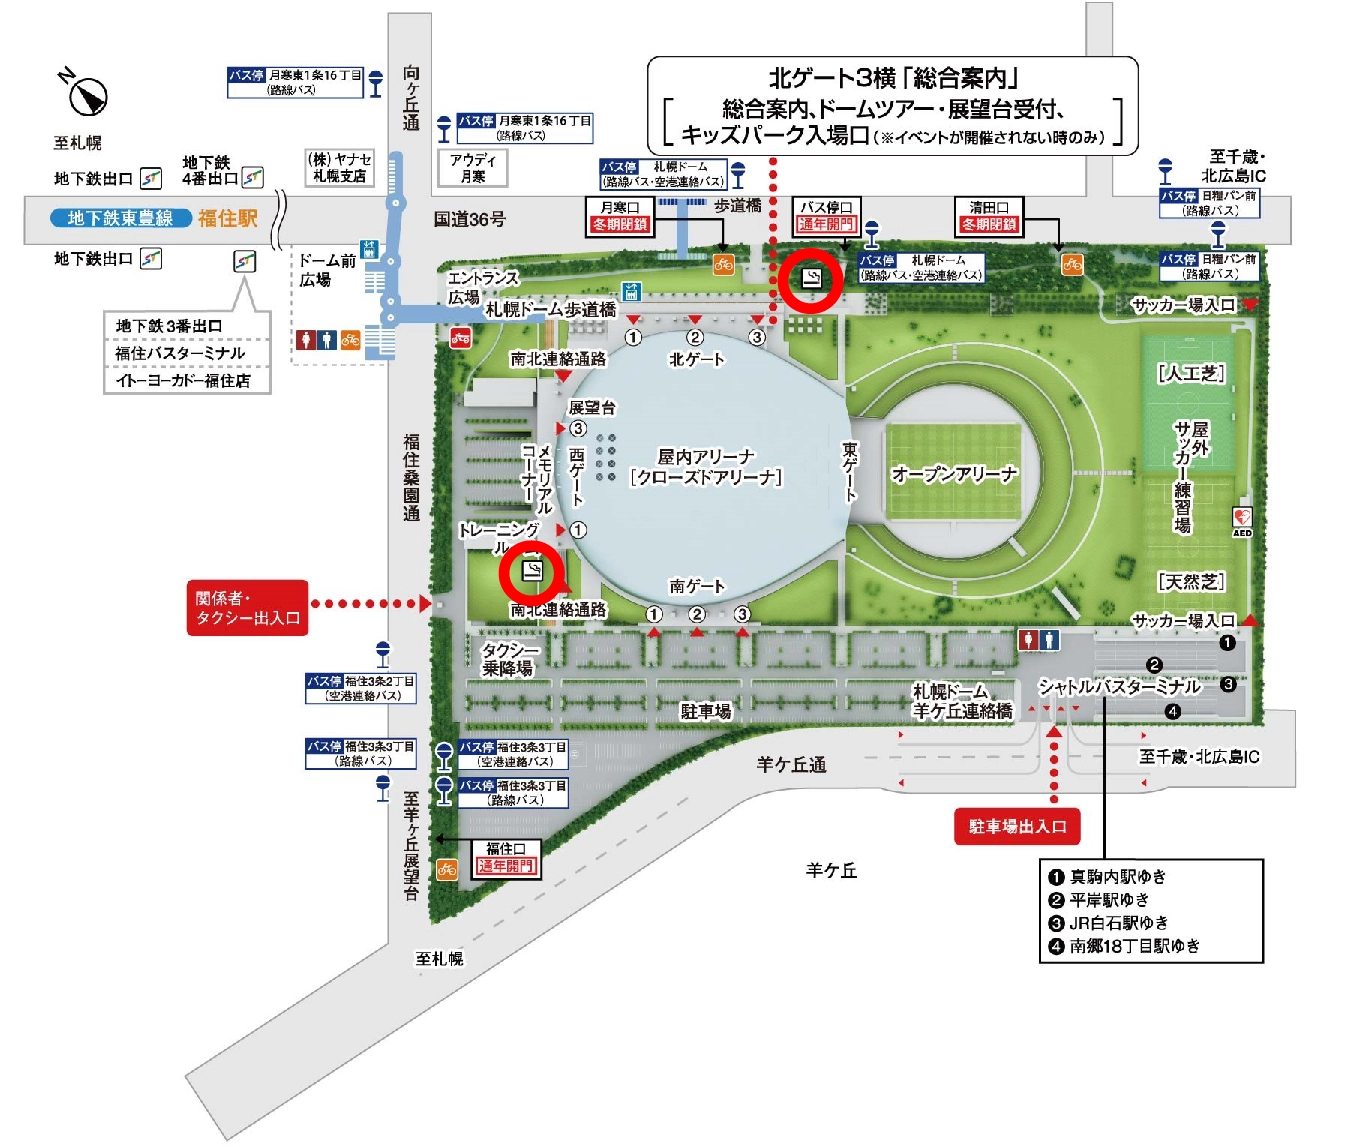 札幌ドームの敷地・近郊マップ